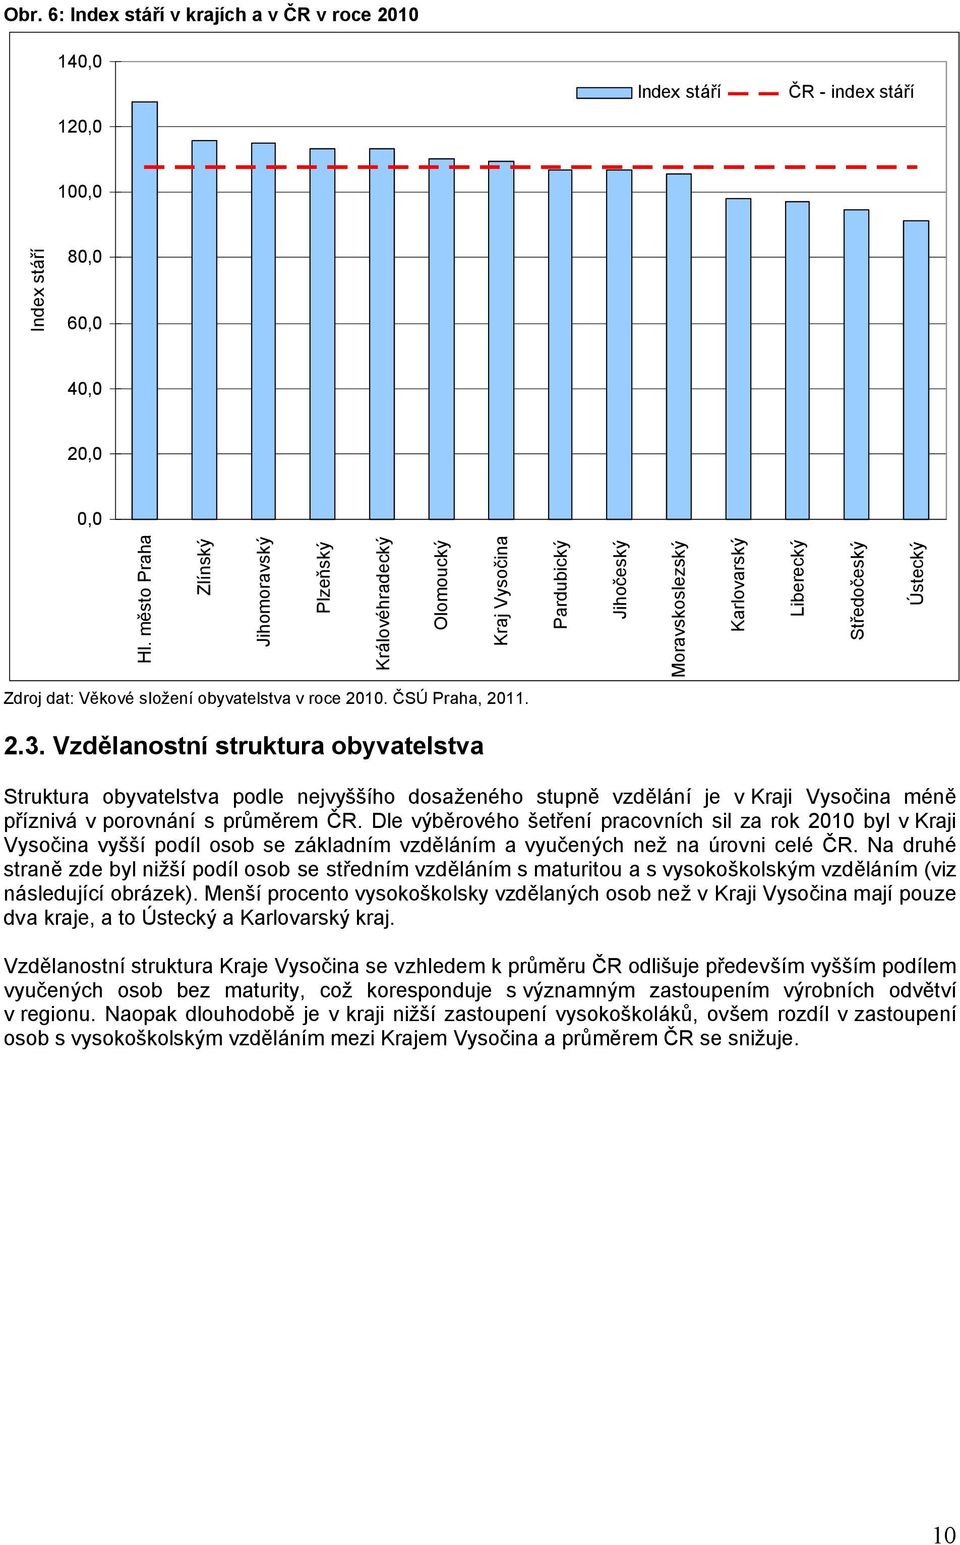 v roce 2010. ČSÚ Praha, 2011. 2.3. Vzdělanostní struktura obyvatelstva Struktura obyvatelstva podle nejvyššího dosaženého stupně vzdělání je v Kraji Vysočina méně příznivá v porovnání s průměrem ČR.